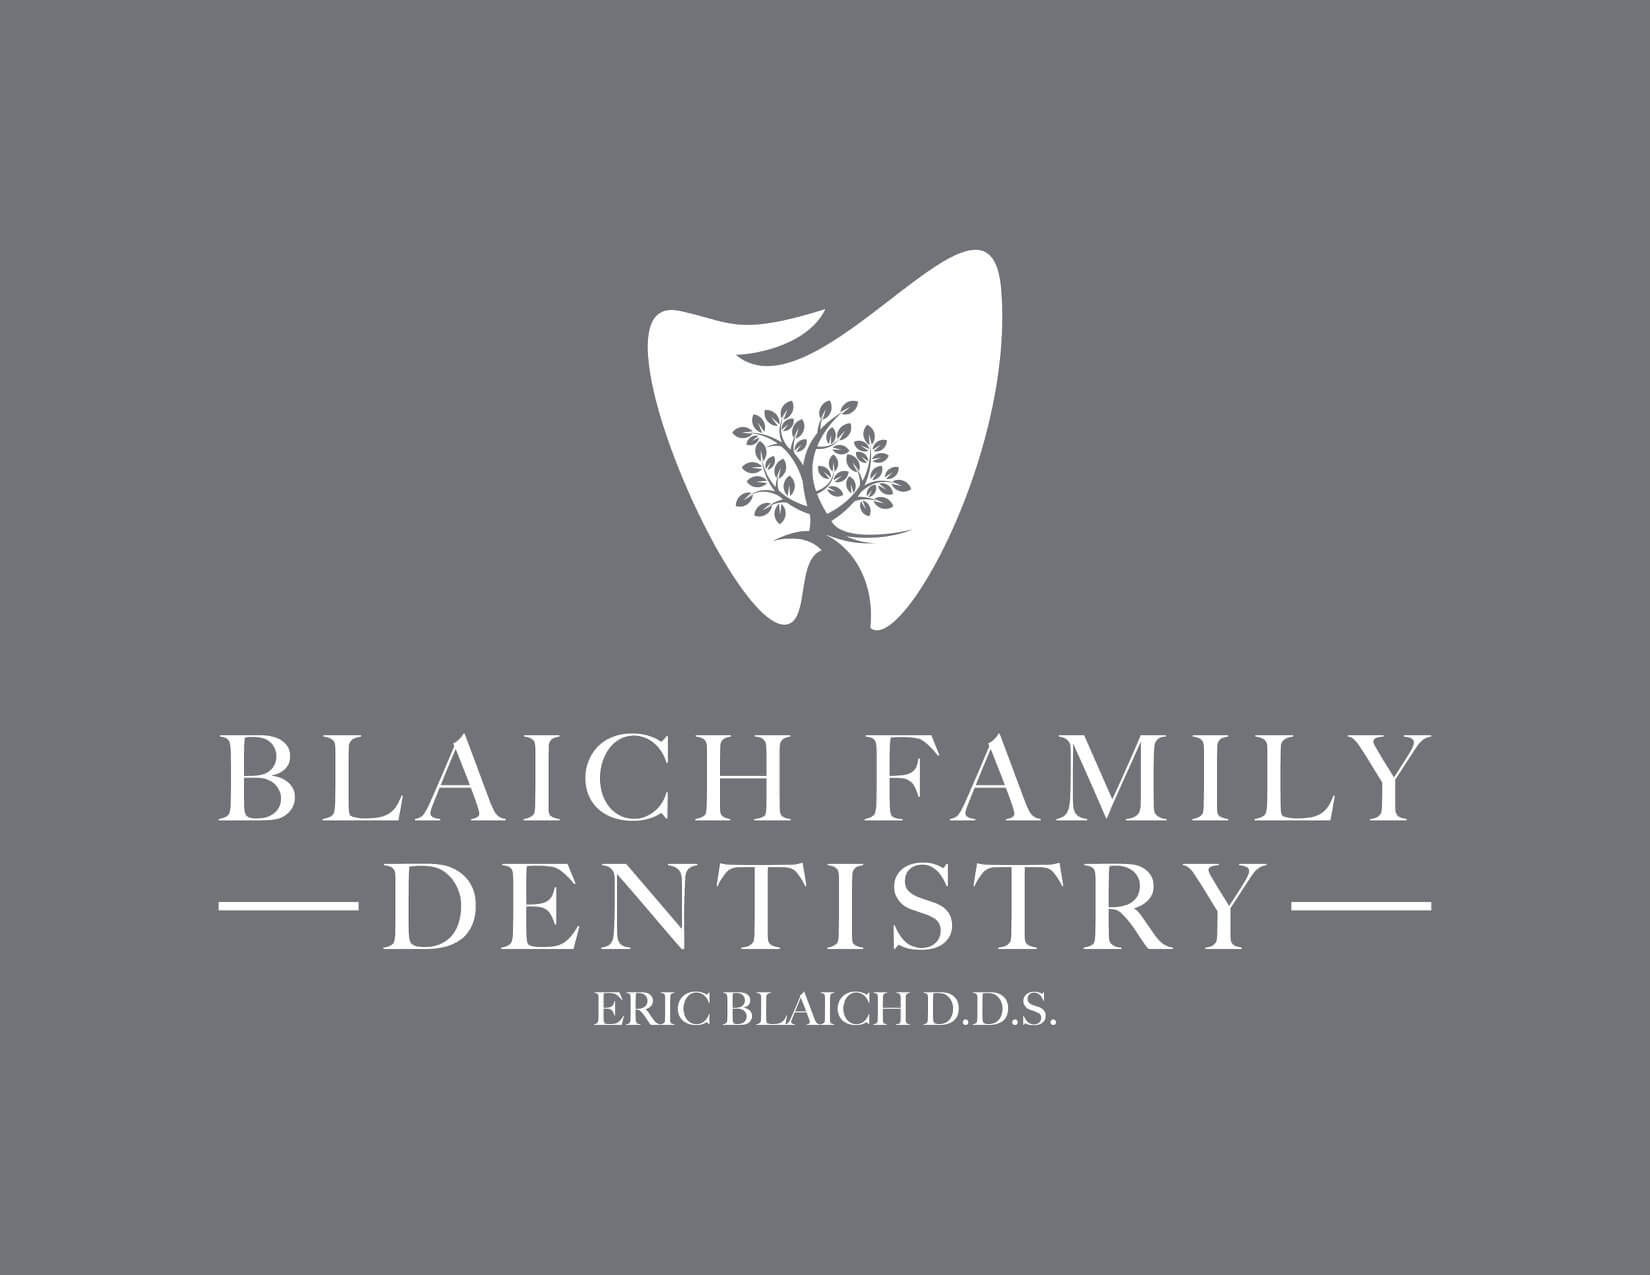 Blaich Family Dentistry $500 Sponsor